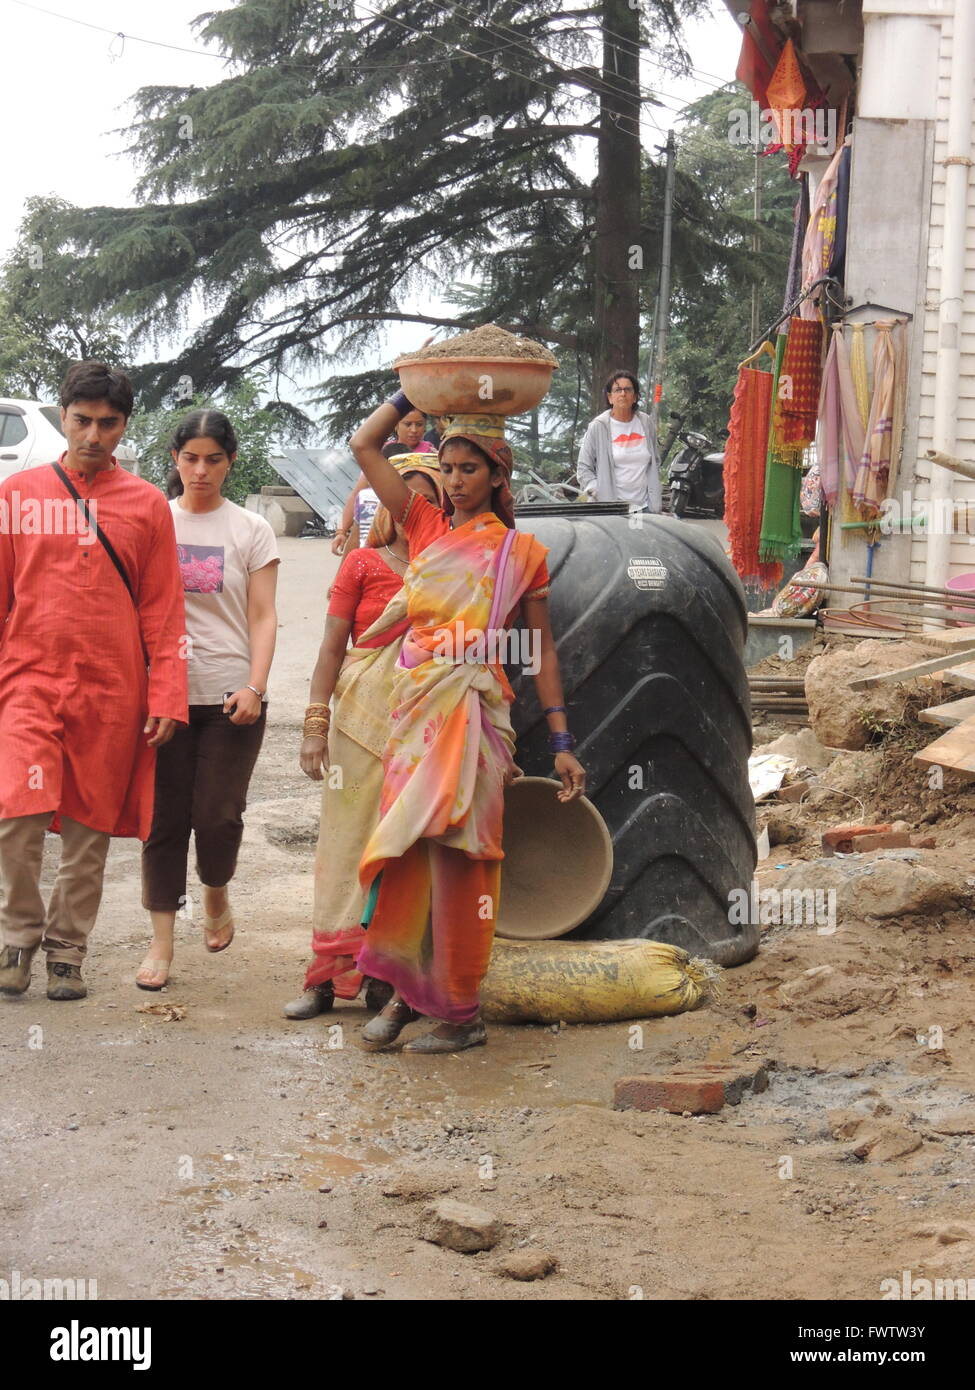 Povero indiano donna porta macerie sul suo capo lavora in un cantiere edile, un facoltoso donna indiana in abito occidentale passeggiate passato Foto Stock